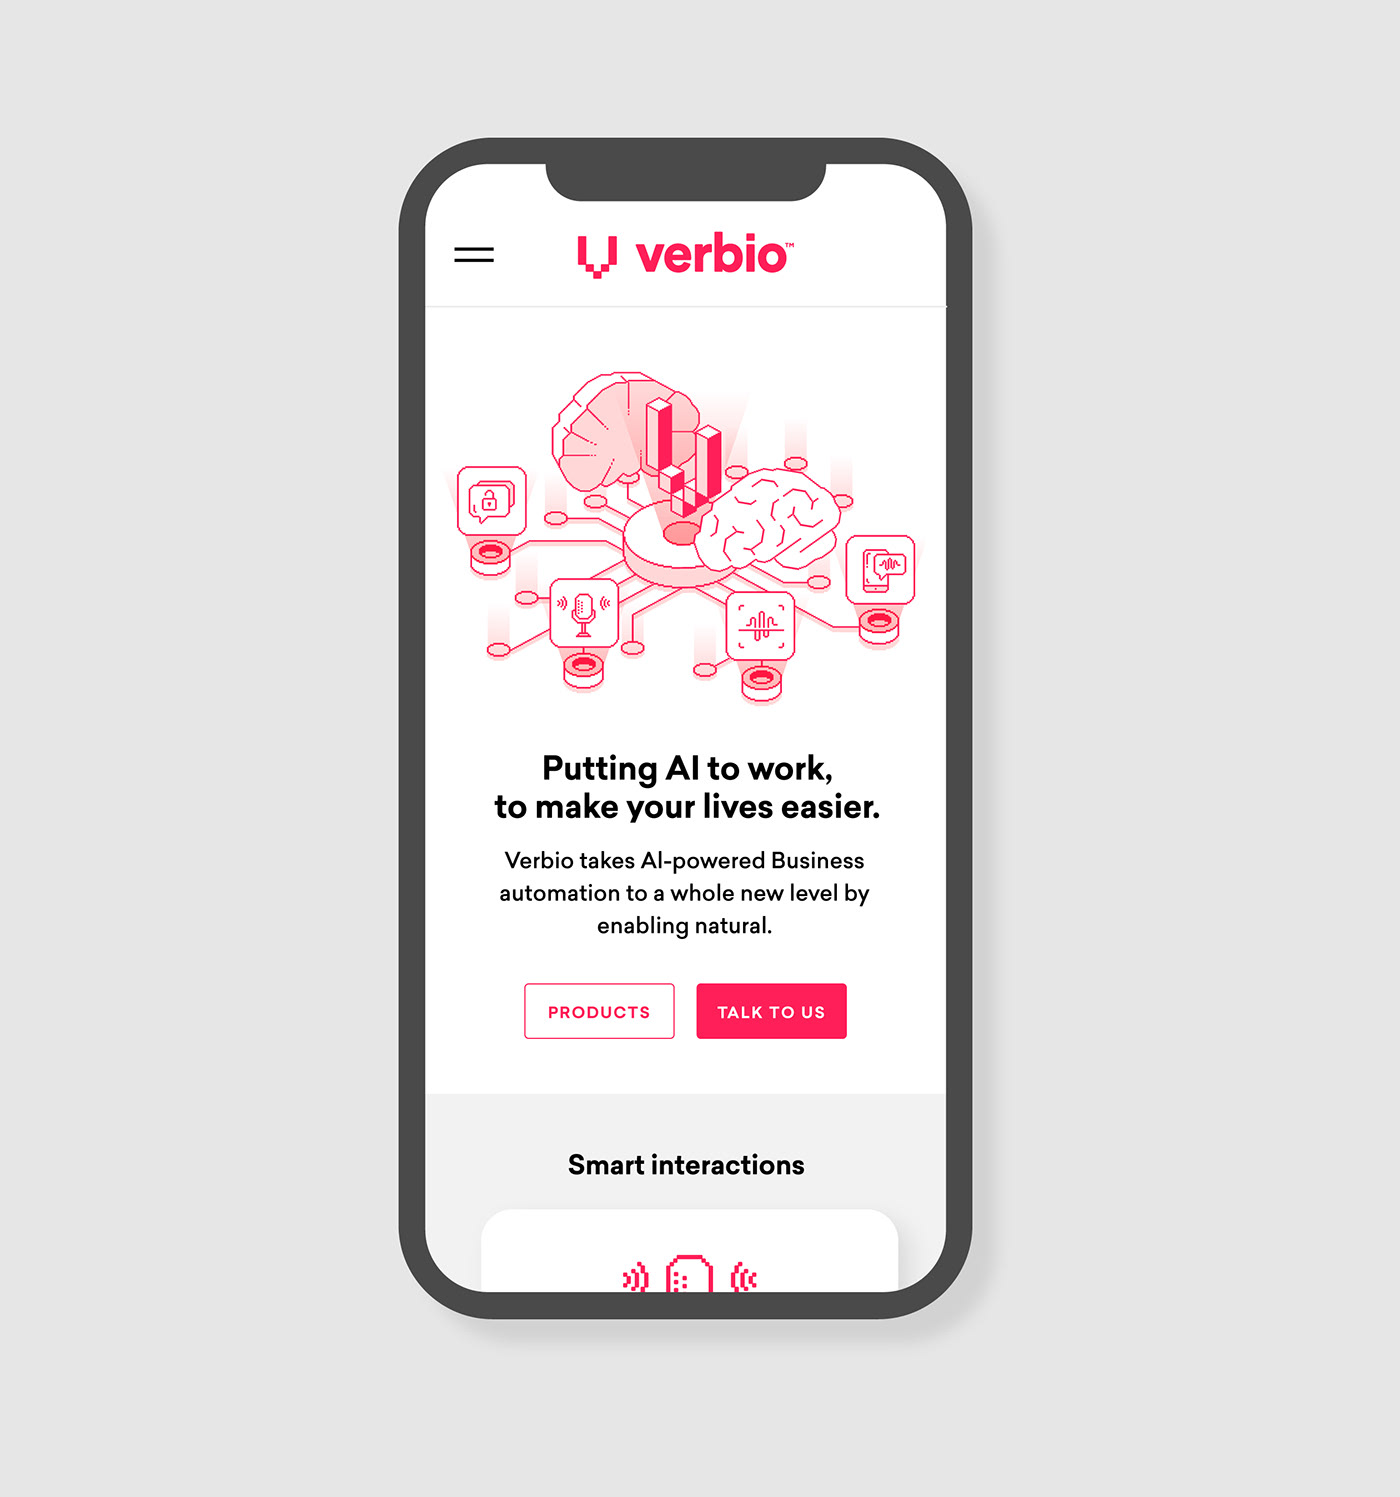 语音AI科技公司Verbio视觉形象和网页设计